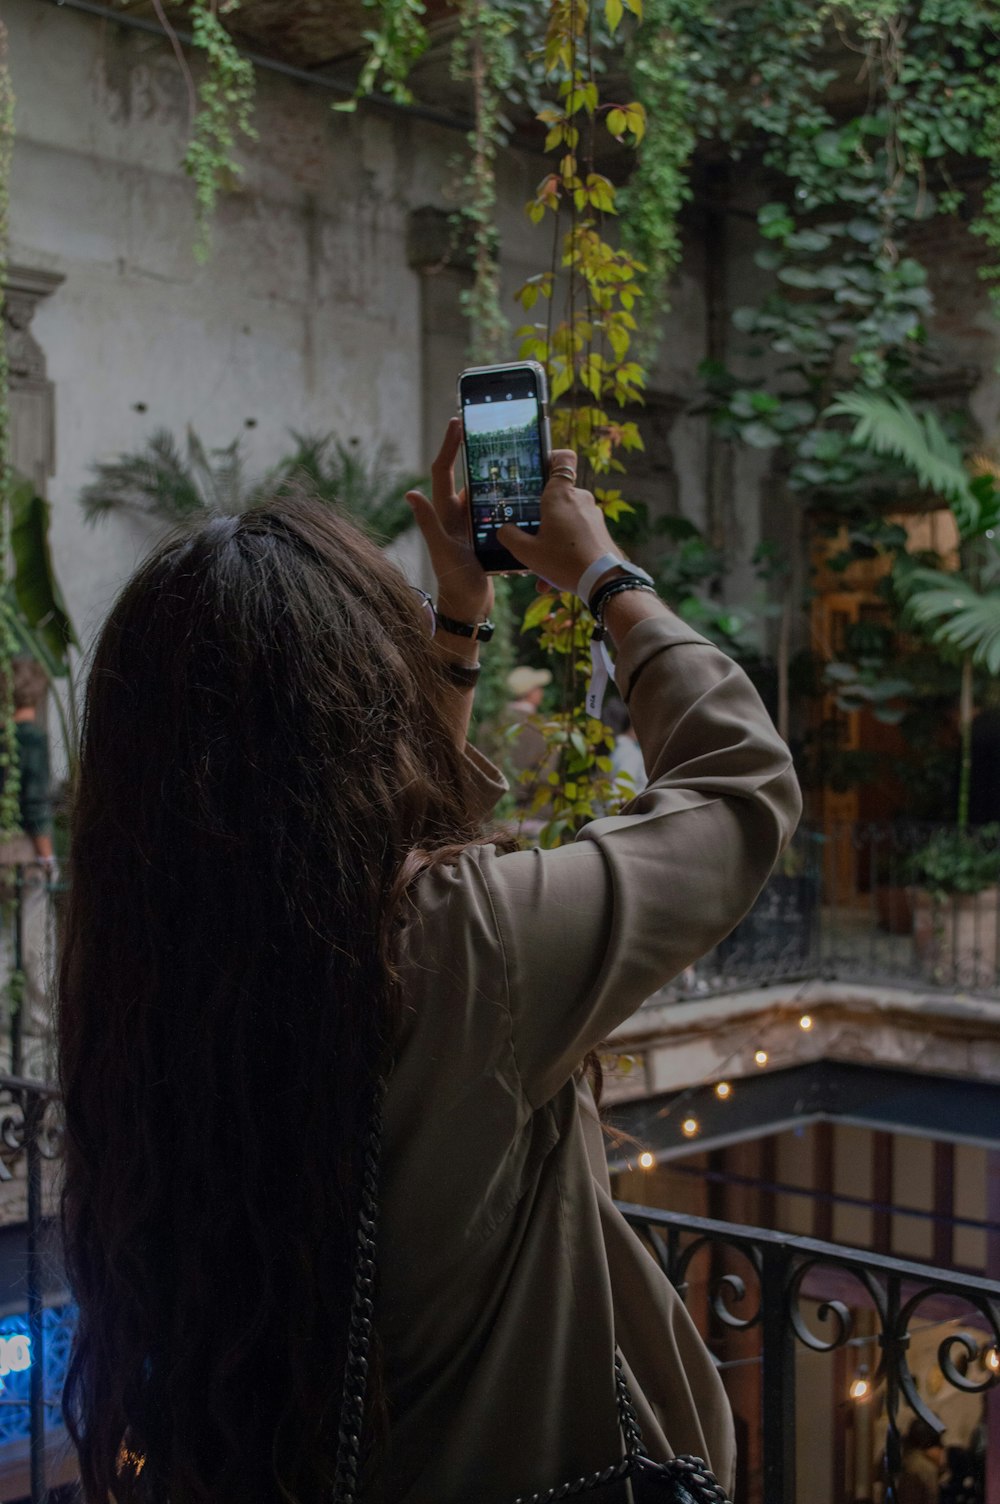 femme debout sur le balcon prenant une photo à l’aide d’un smartphone